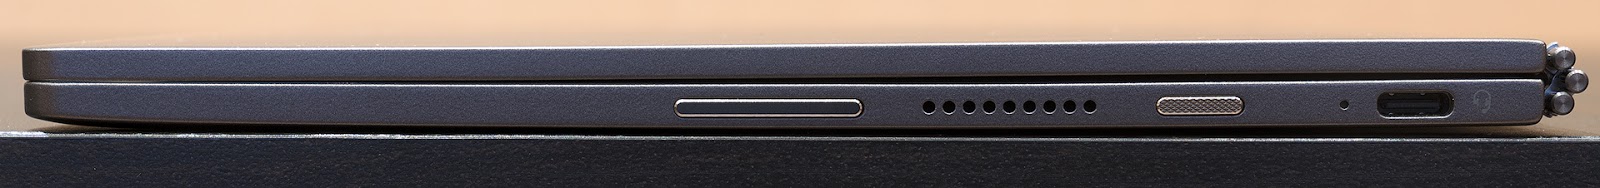 Lenovo YogaBook C930: устройство, которое заменяет сразу четыре гаджета - 6